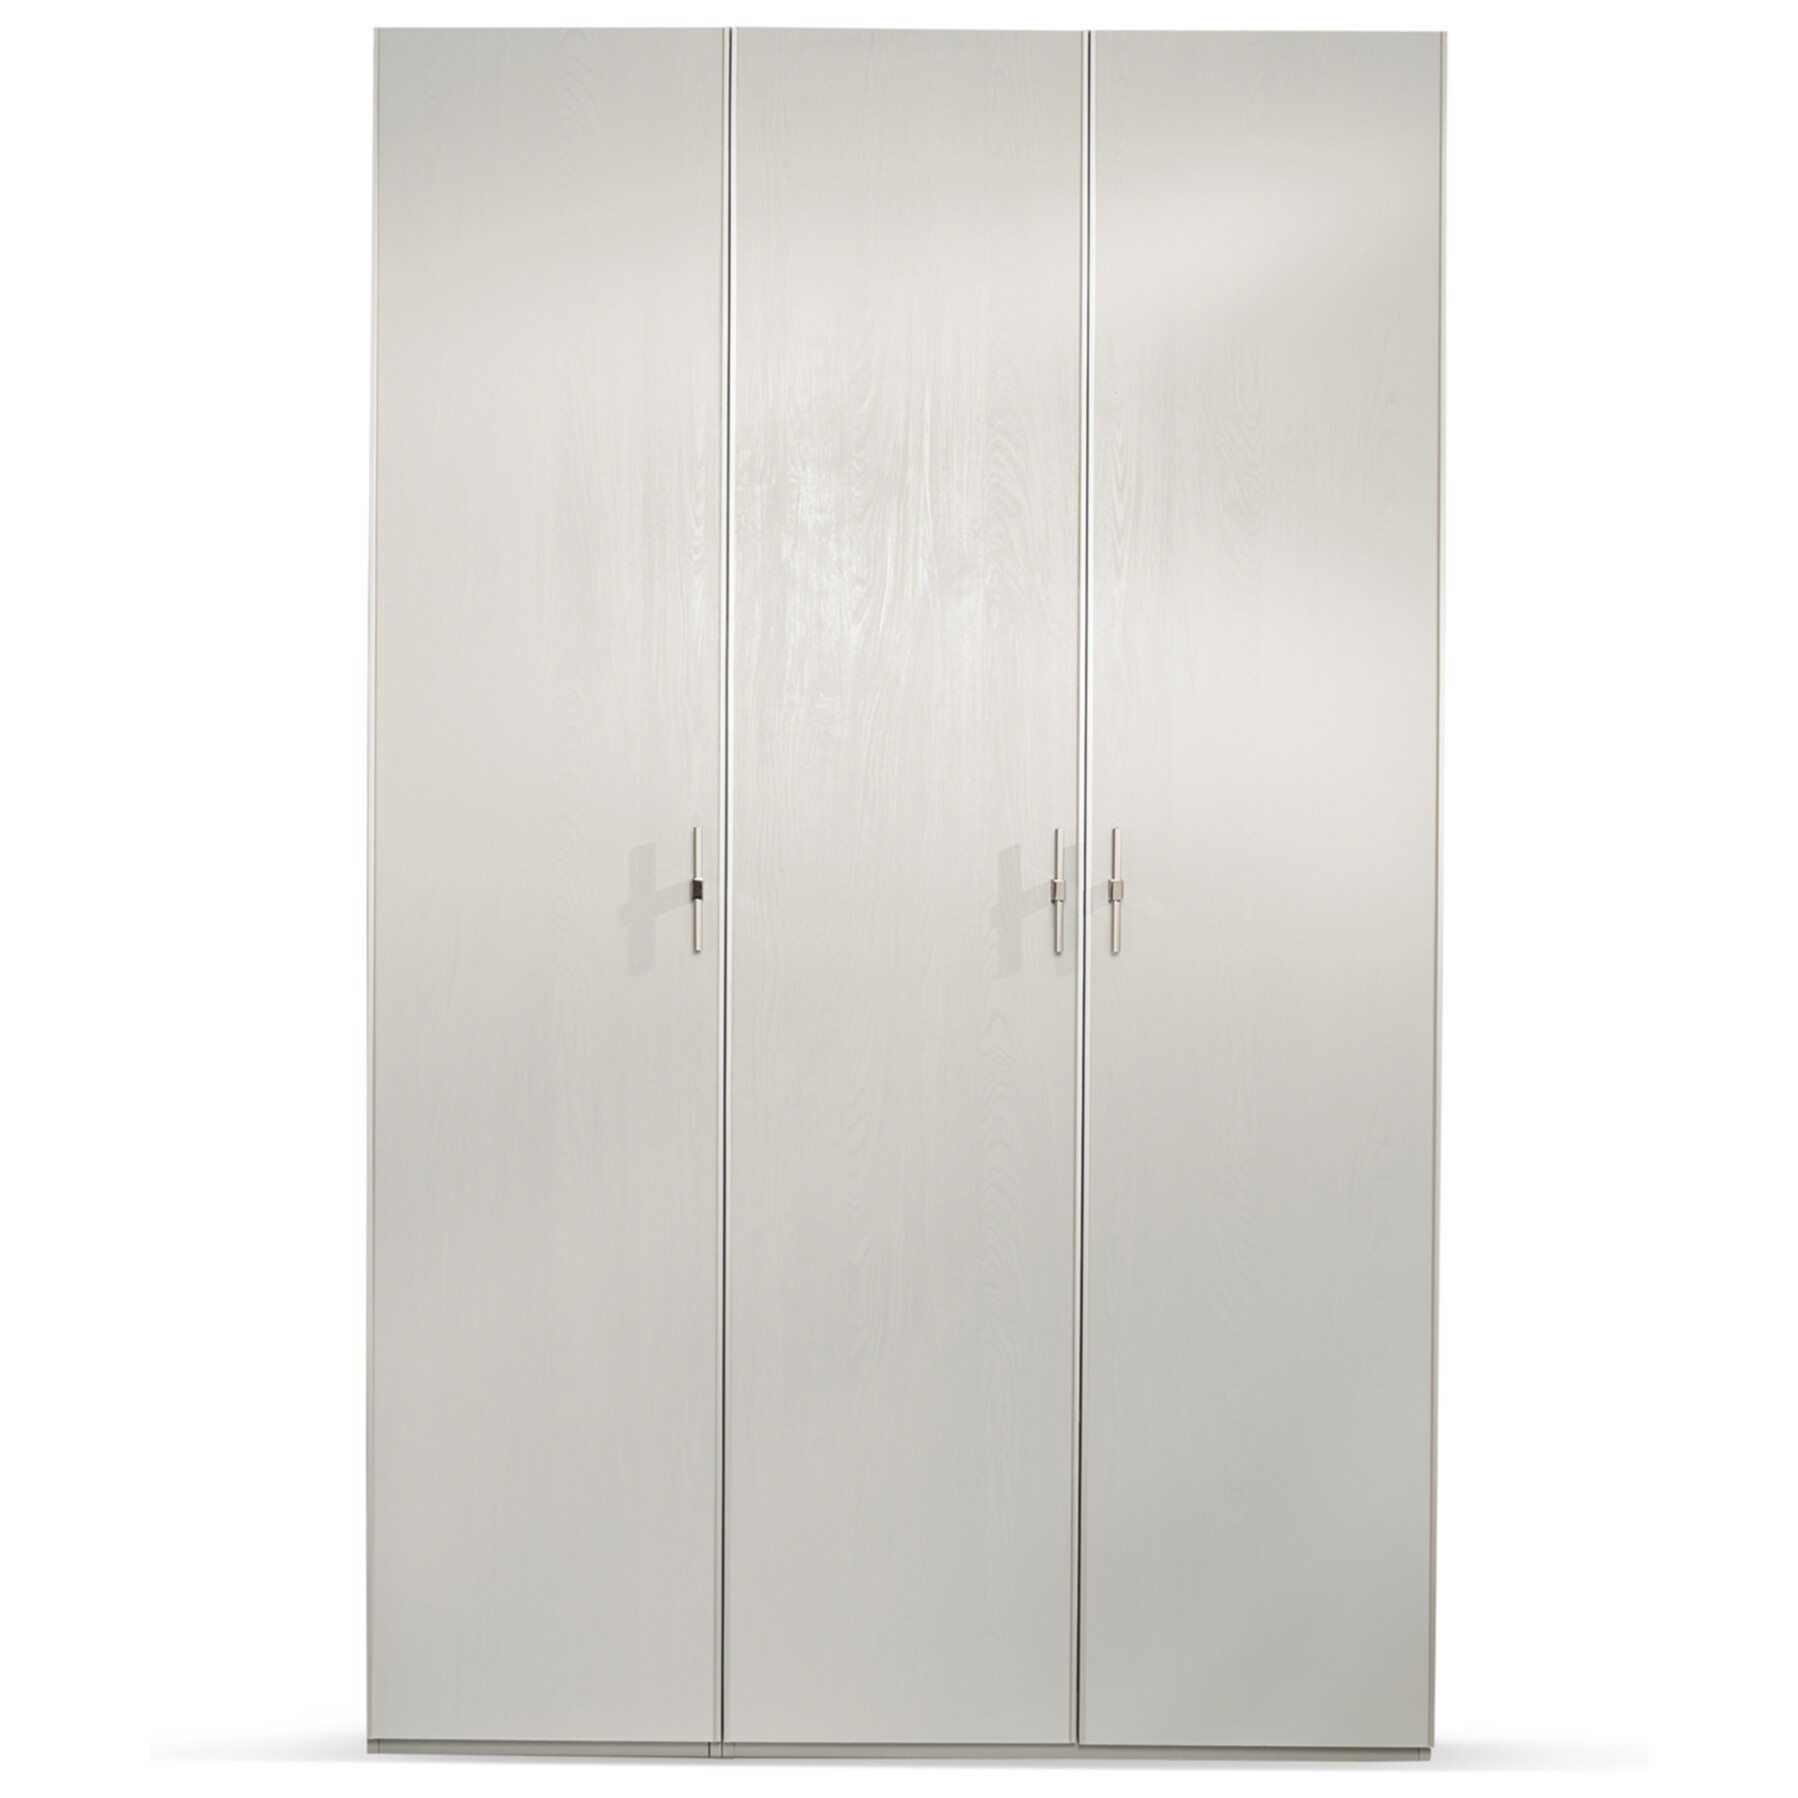 Шкаф платяной трехстворчатый 150 см светло-серый, серебро Palmari